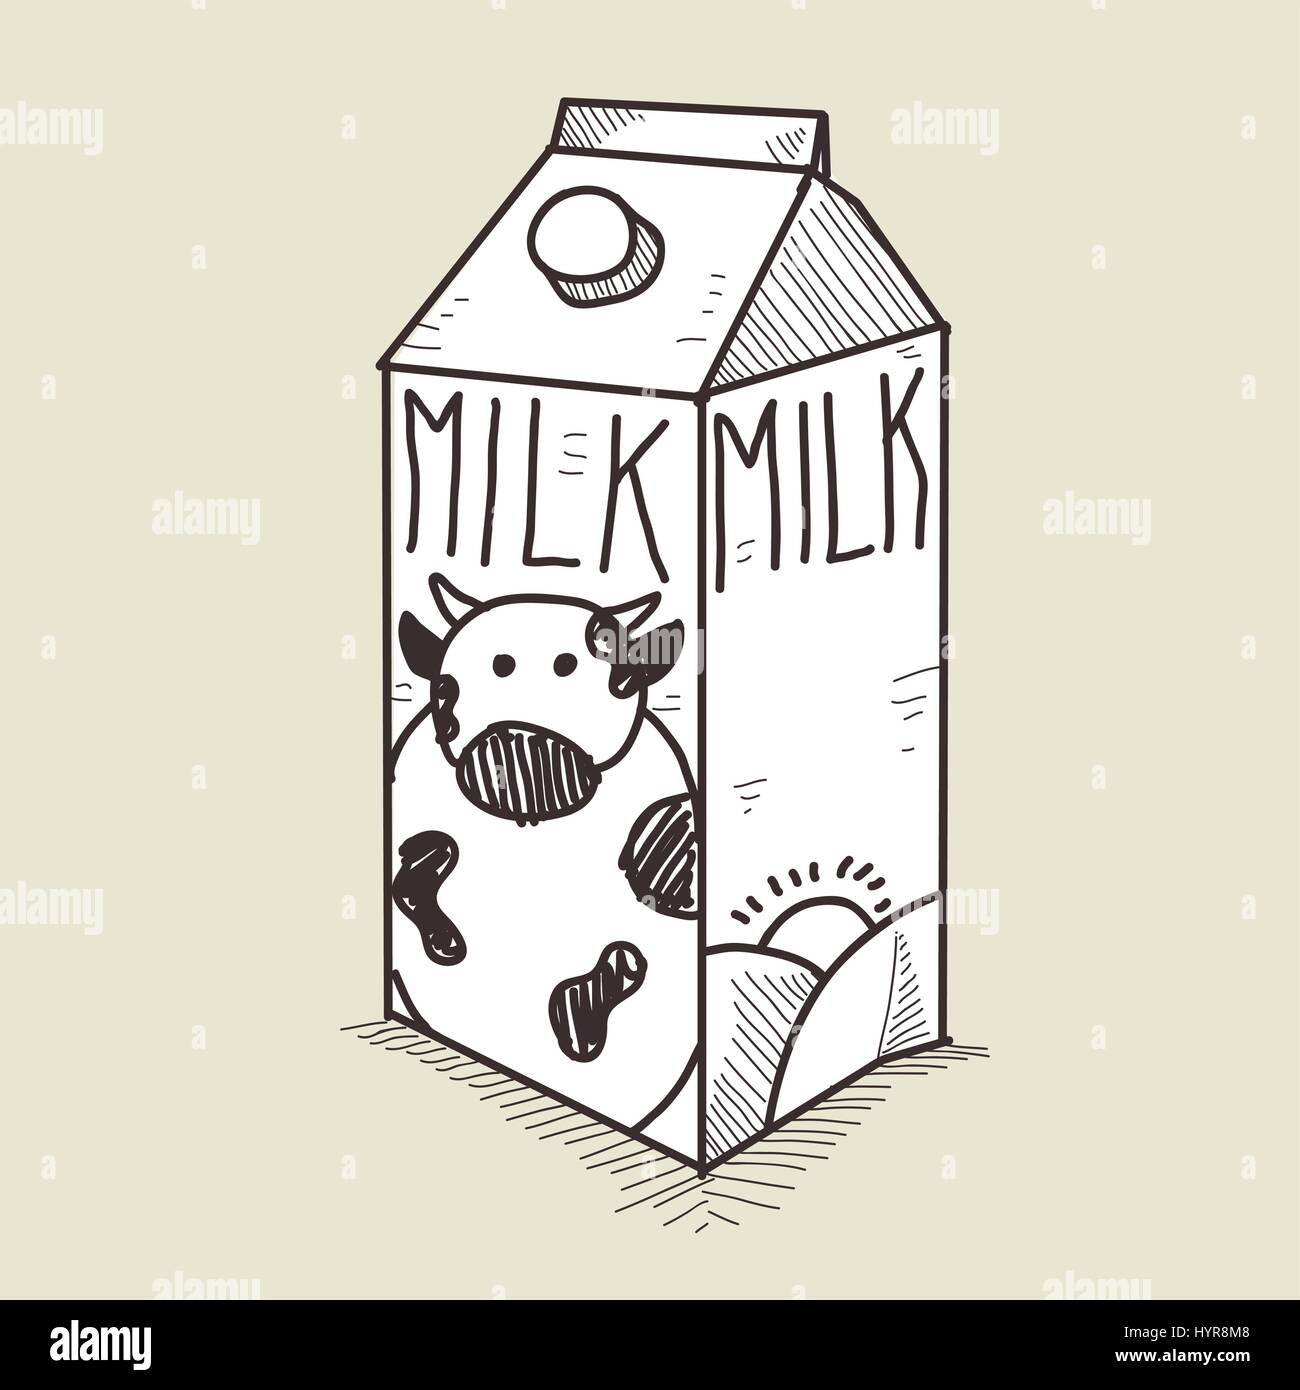 Vektor Handzeichnung Skizze Milch-Box Abbildung Stock Vektor